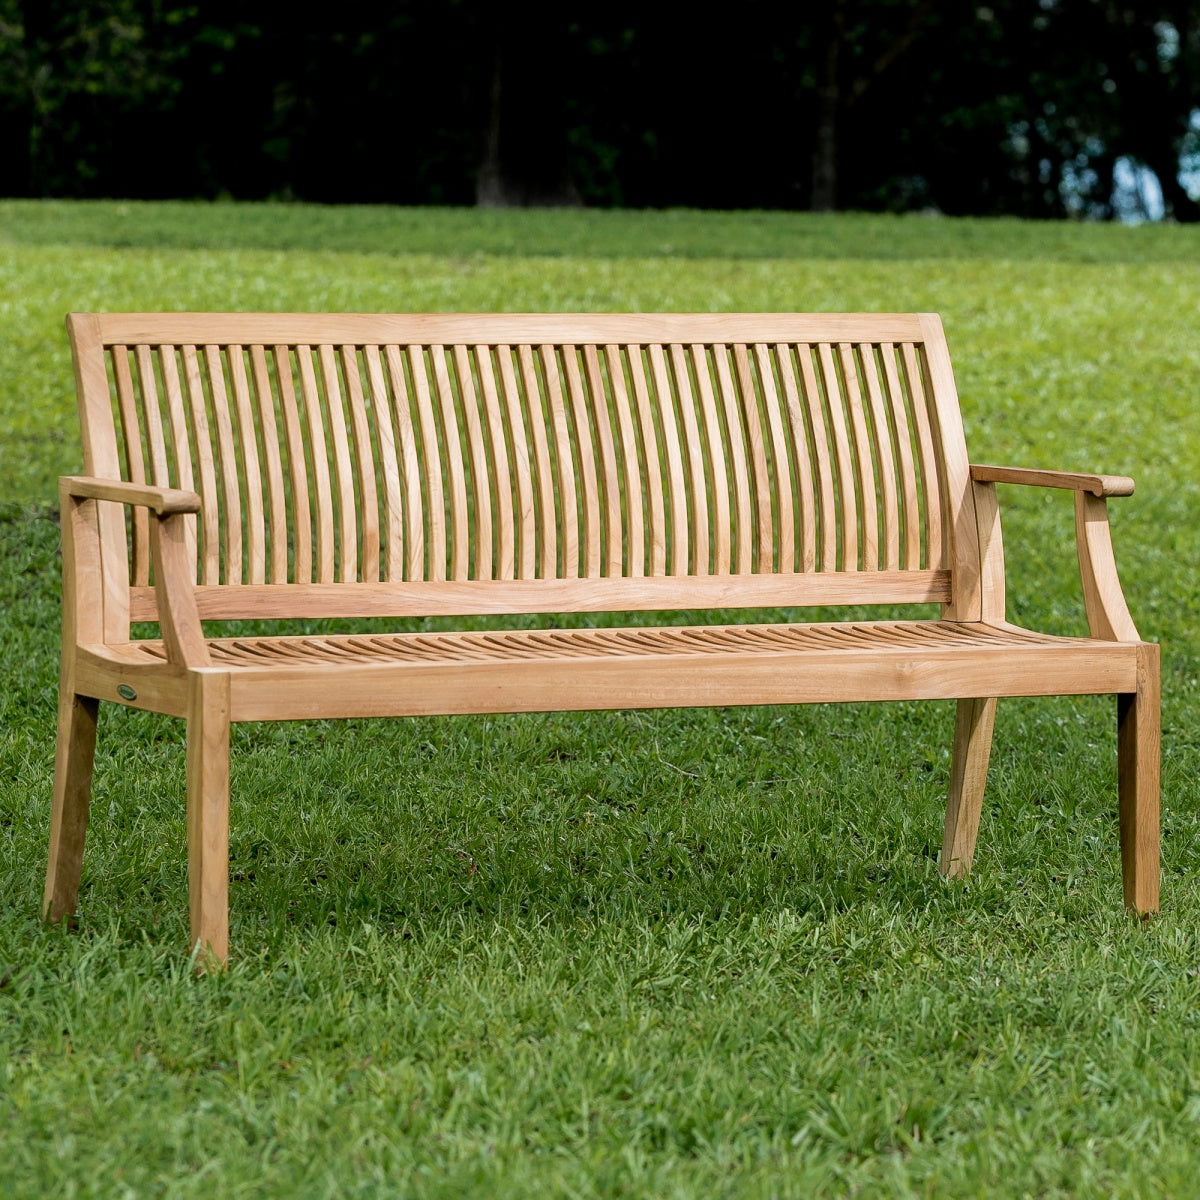 Westminster Teak - 5 ft Laguna Teak Bench Also Available in 4 ft & 6 ft Lengths - 13811